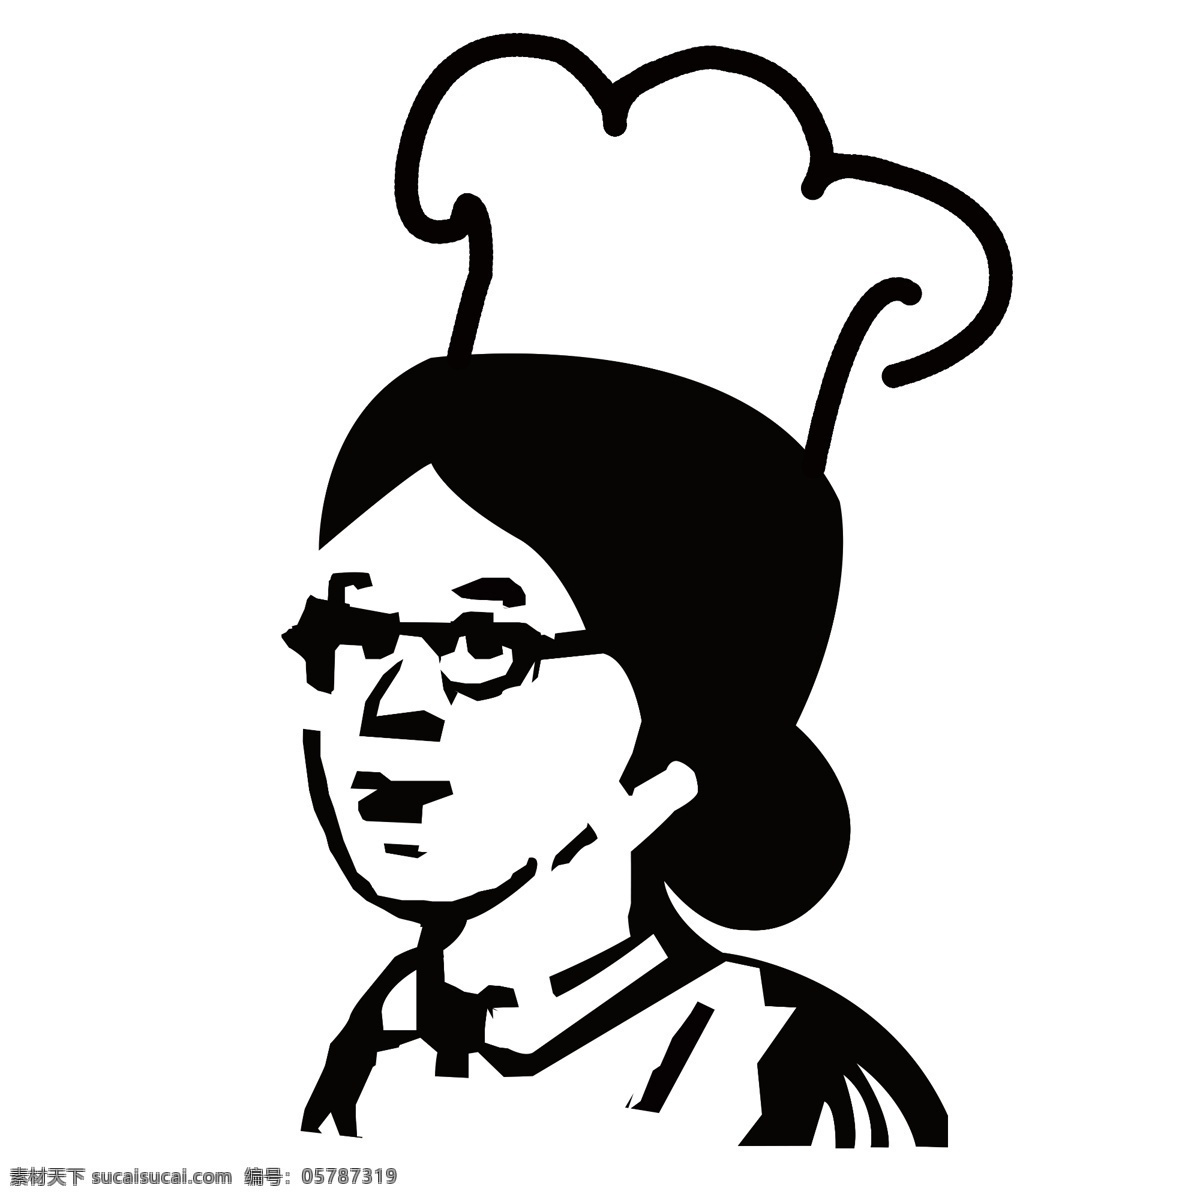 老婆婆 厨师 logo 老奶奶 女厨师 麻辣烫 标志图标 企业 标志